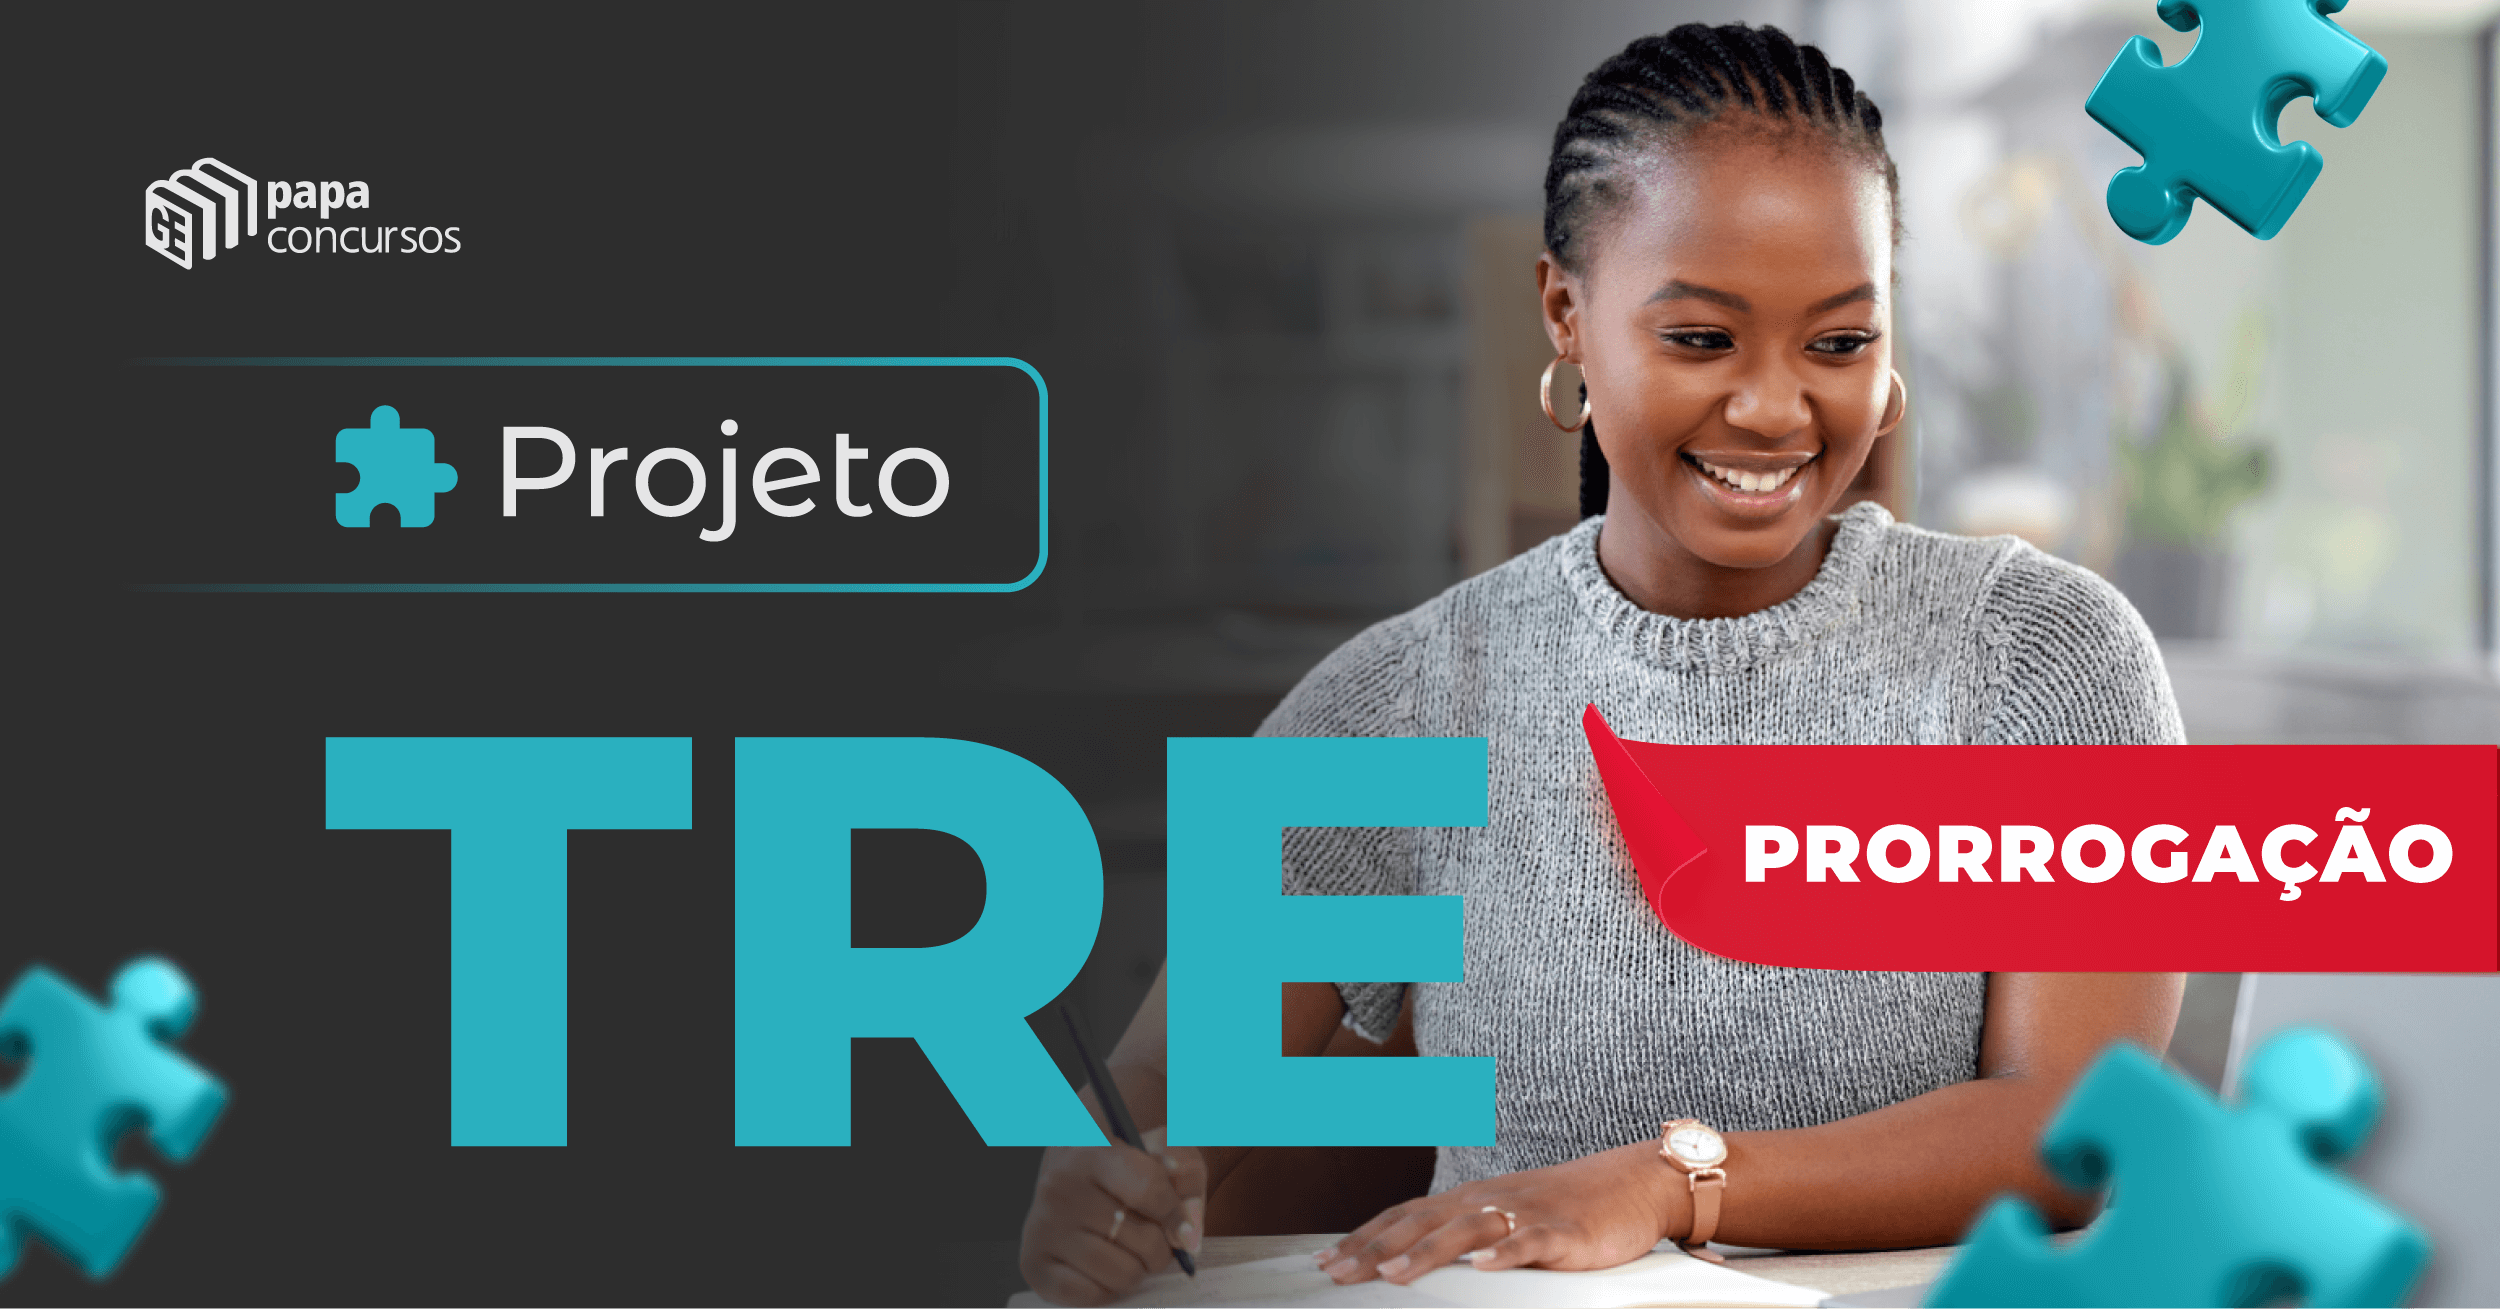 Projeto TRE - Prorrogao